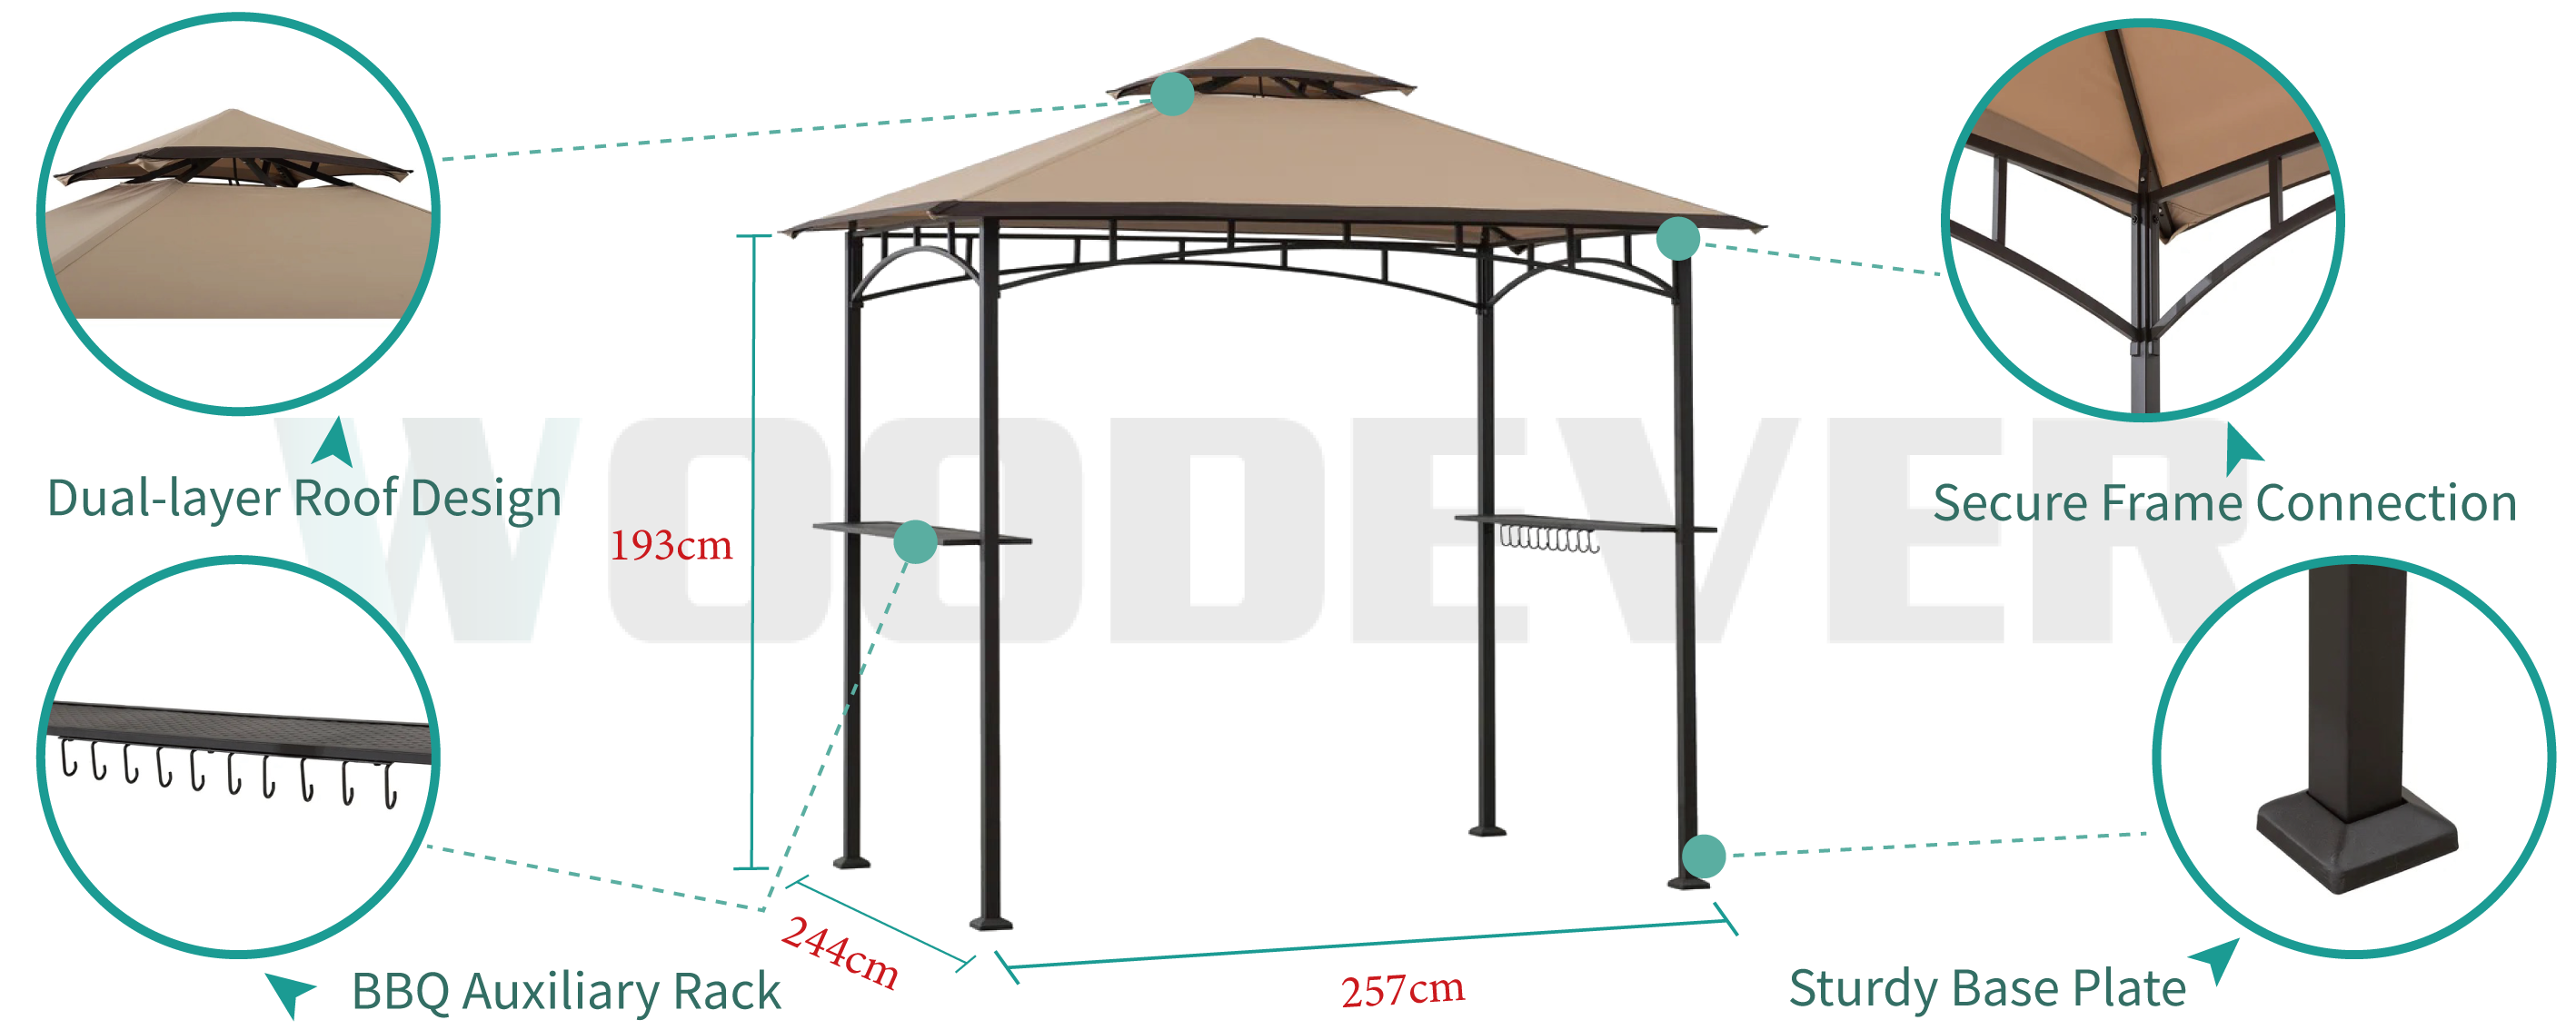 WOODEVER Outdoor-Barbecue-Metallpergola mit Doppeldach-Design, 360-Grad-Umluftbelüftung, mit Metallregalen und Haken zur Verbesserung des Outdoor-Nutzerlebnisses.